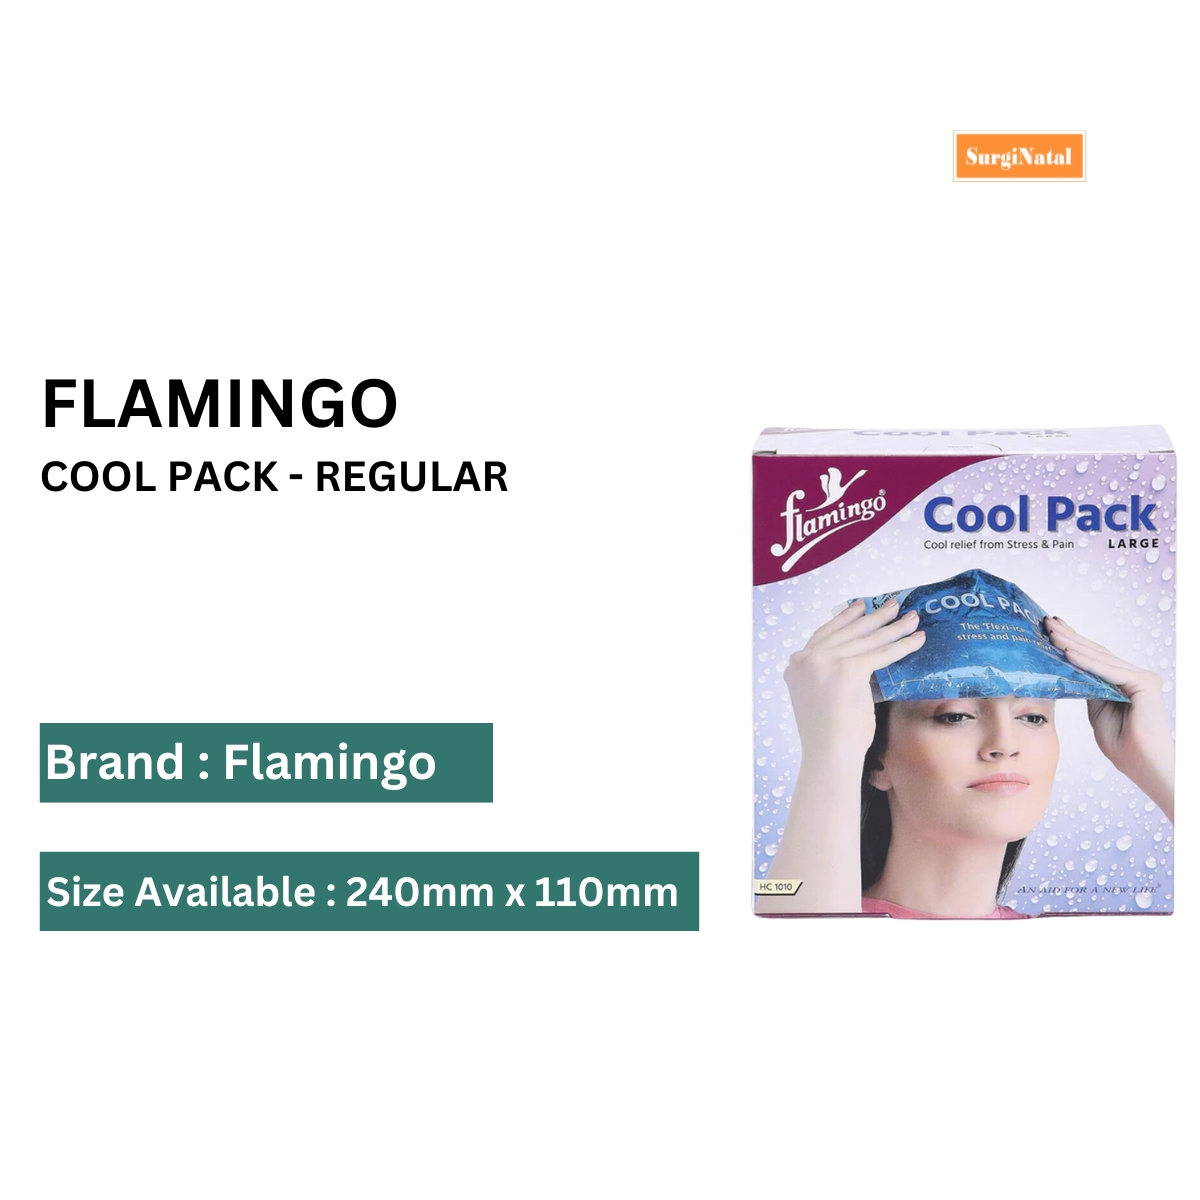 flamingo cool pack - regular